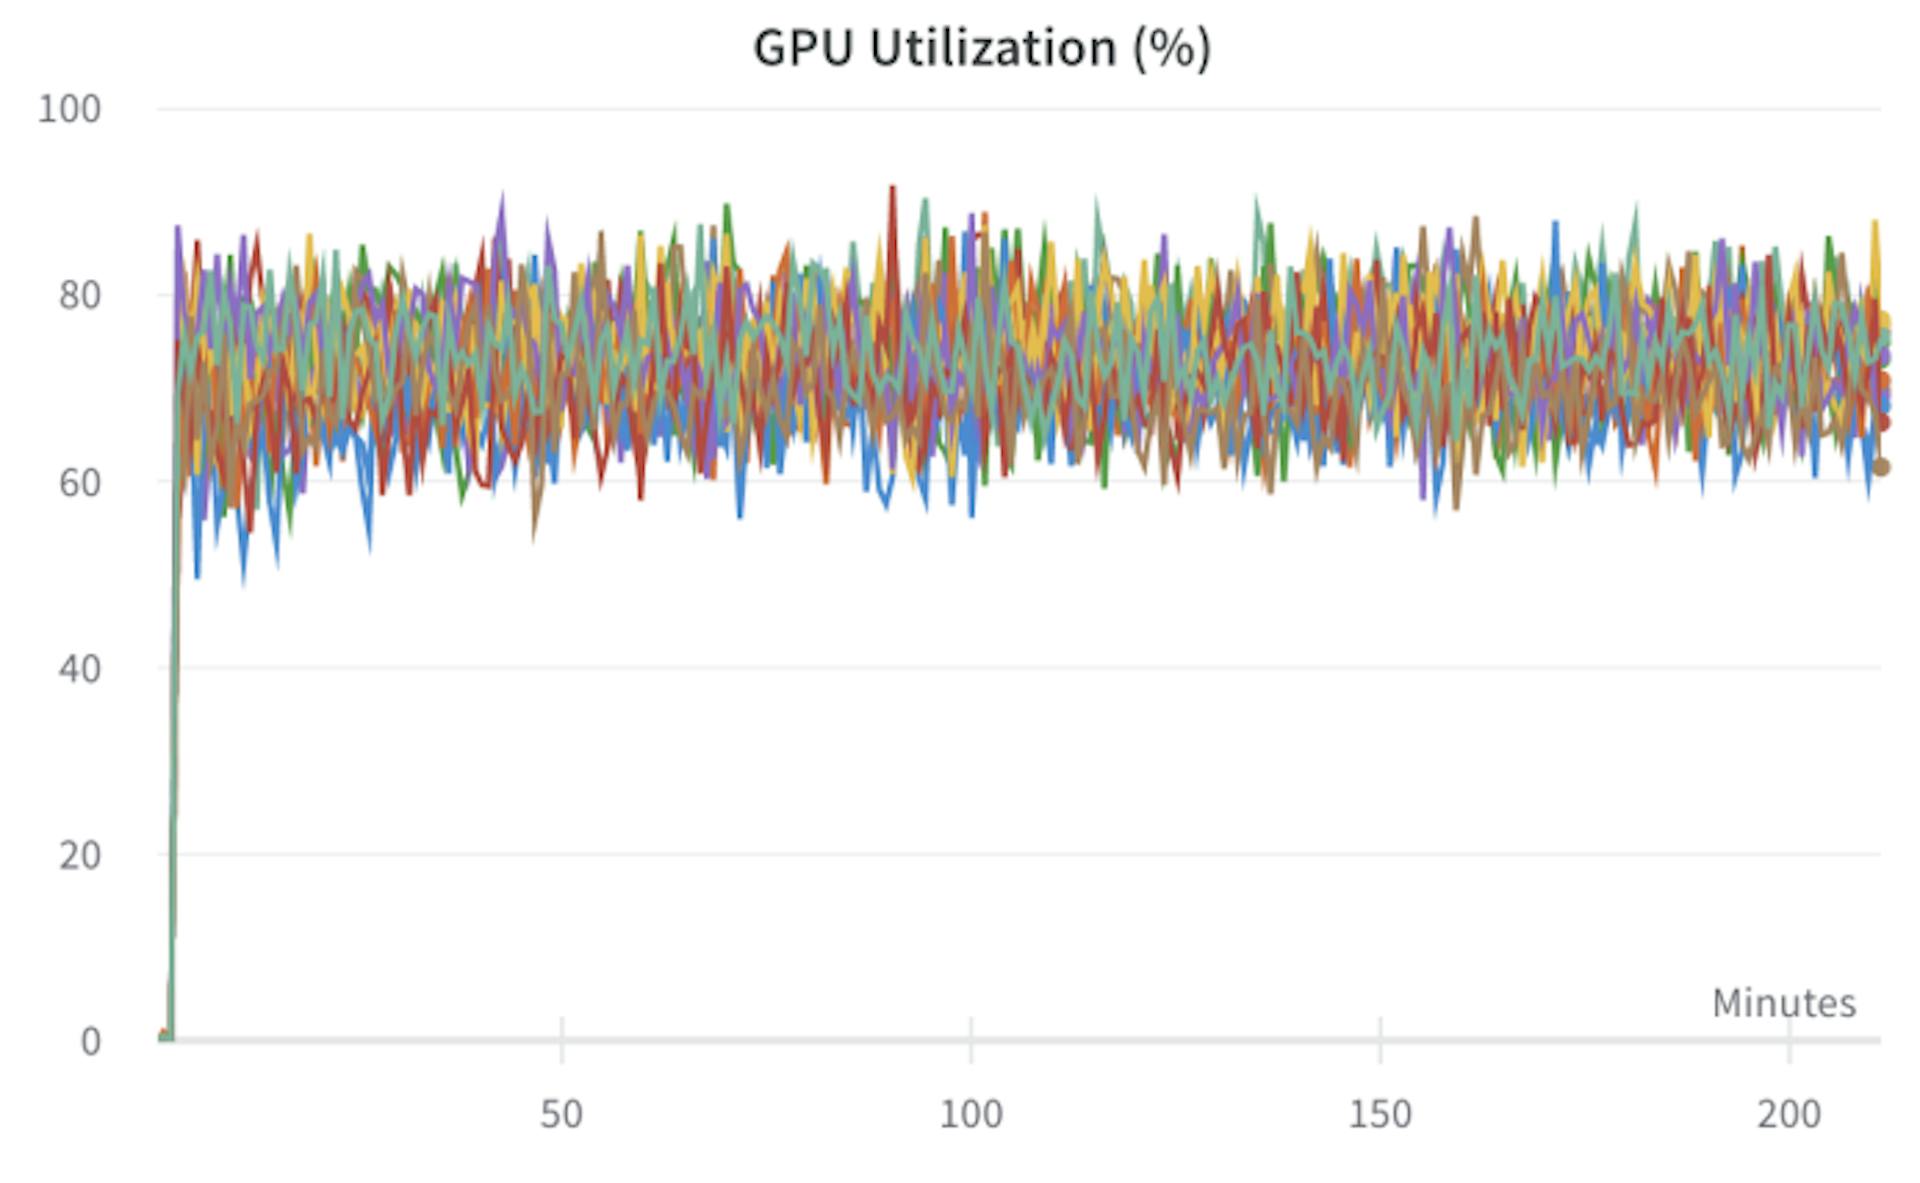 Hình 10: Việc sử dụng GPU của máy GPU 16xA100 đơn lẻ trong khi đào tạo mô hình CLIP tham số 1B [60]. Tập dữ liệu được phát trực tuyến LAION-400M [68] từ AWS phía đông đến trung tâm dữ liệu trung tâm của chúng tôi GCP. Mỗi màu thể hiện mức sử dụng GPU A100 duy nhất trong quá trình đào tạo.